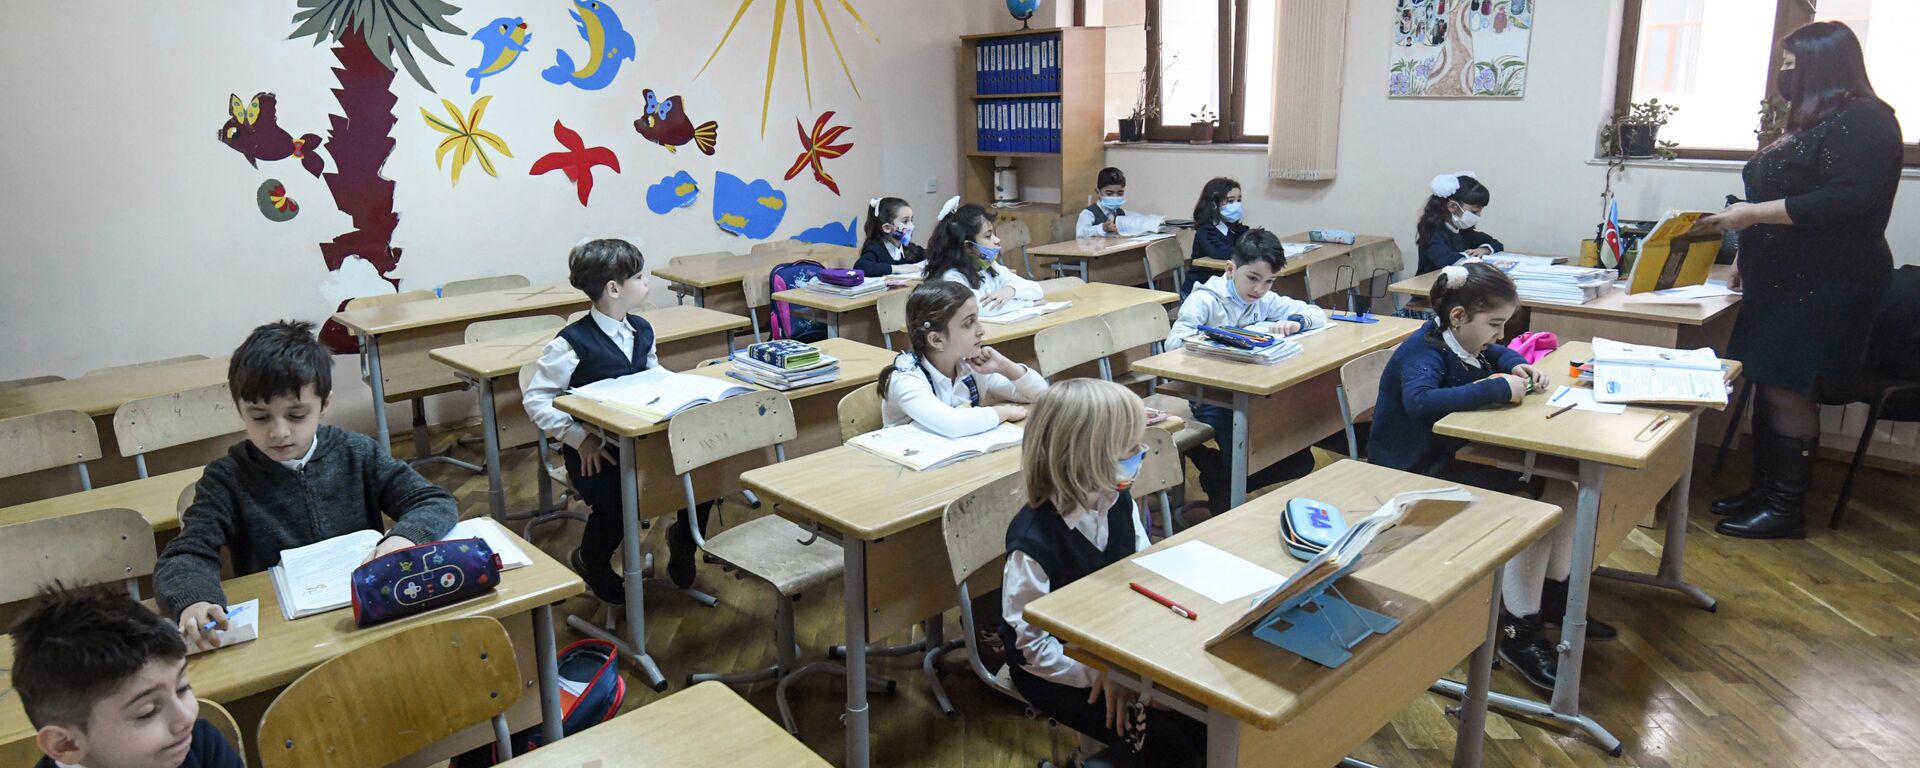 Возобновление очных занятий в бакинских школах, 1 февраля 2021 года - Sputnik Азербайджан, 1920, 07.05.2021